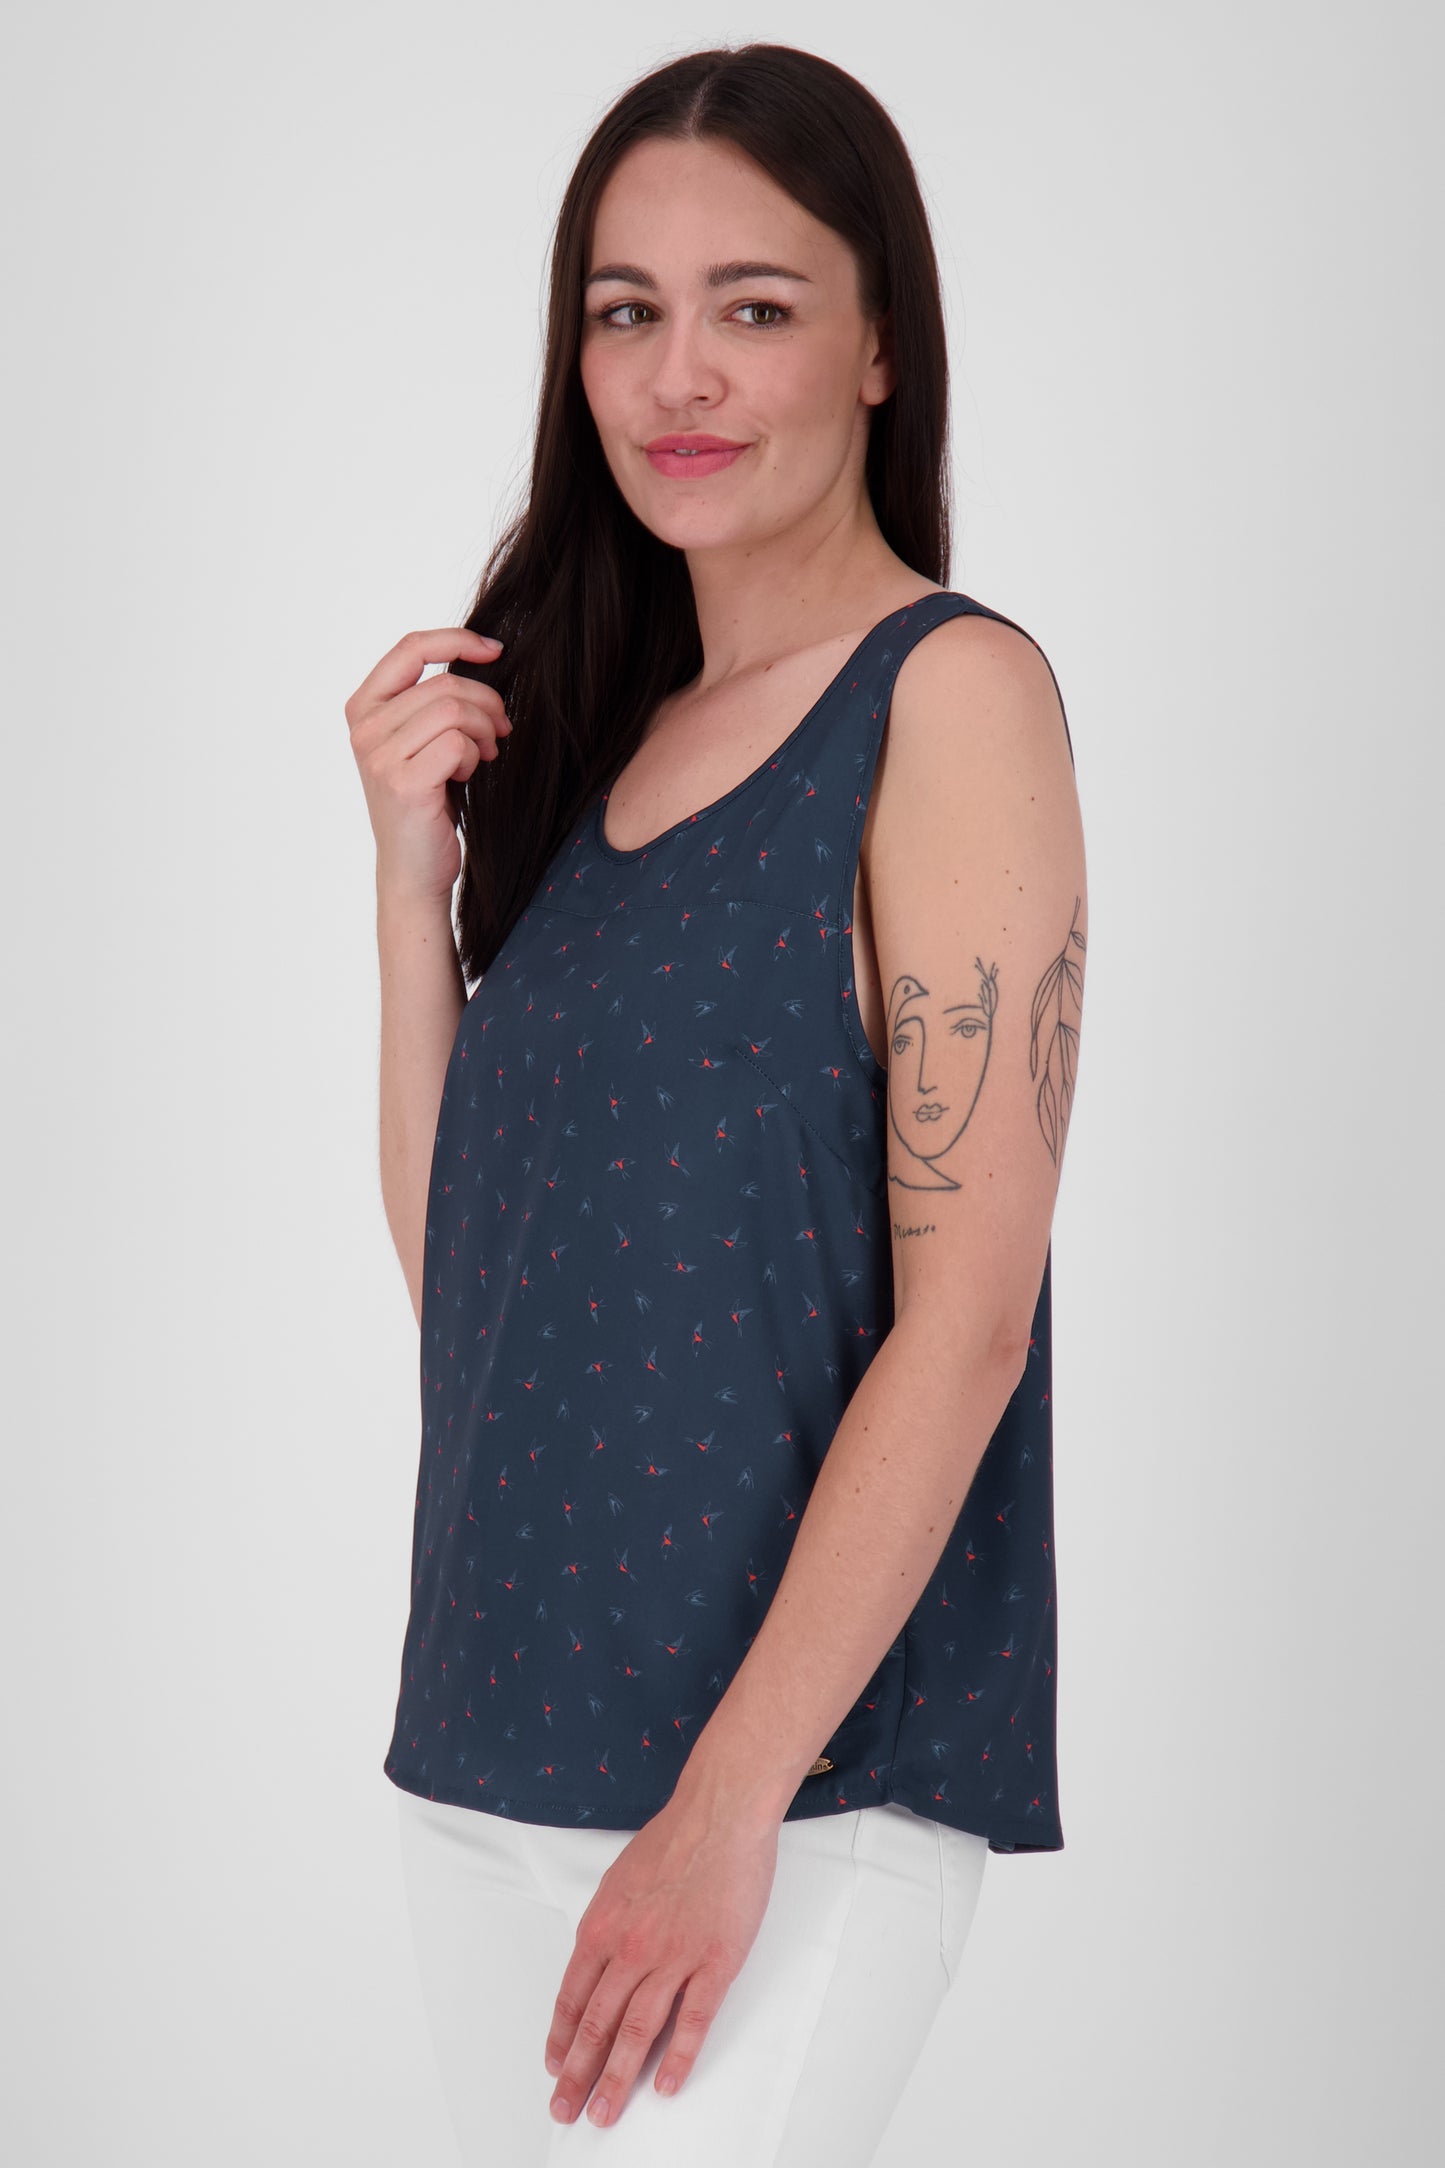 Luftig leichte Shirtbluse mit Muster GiuliaAK B für Damen Dunkelblau